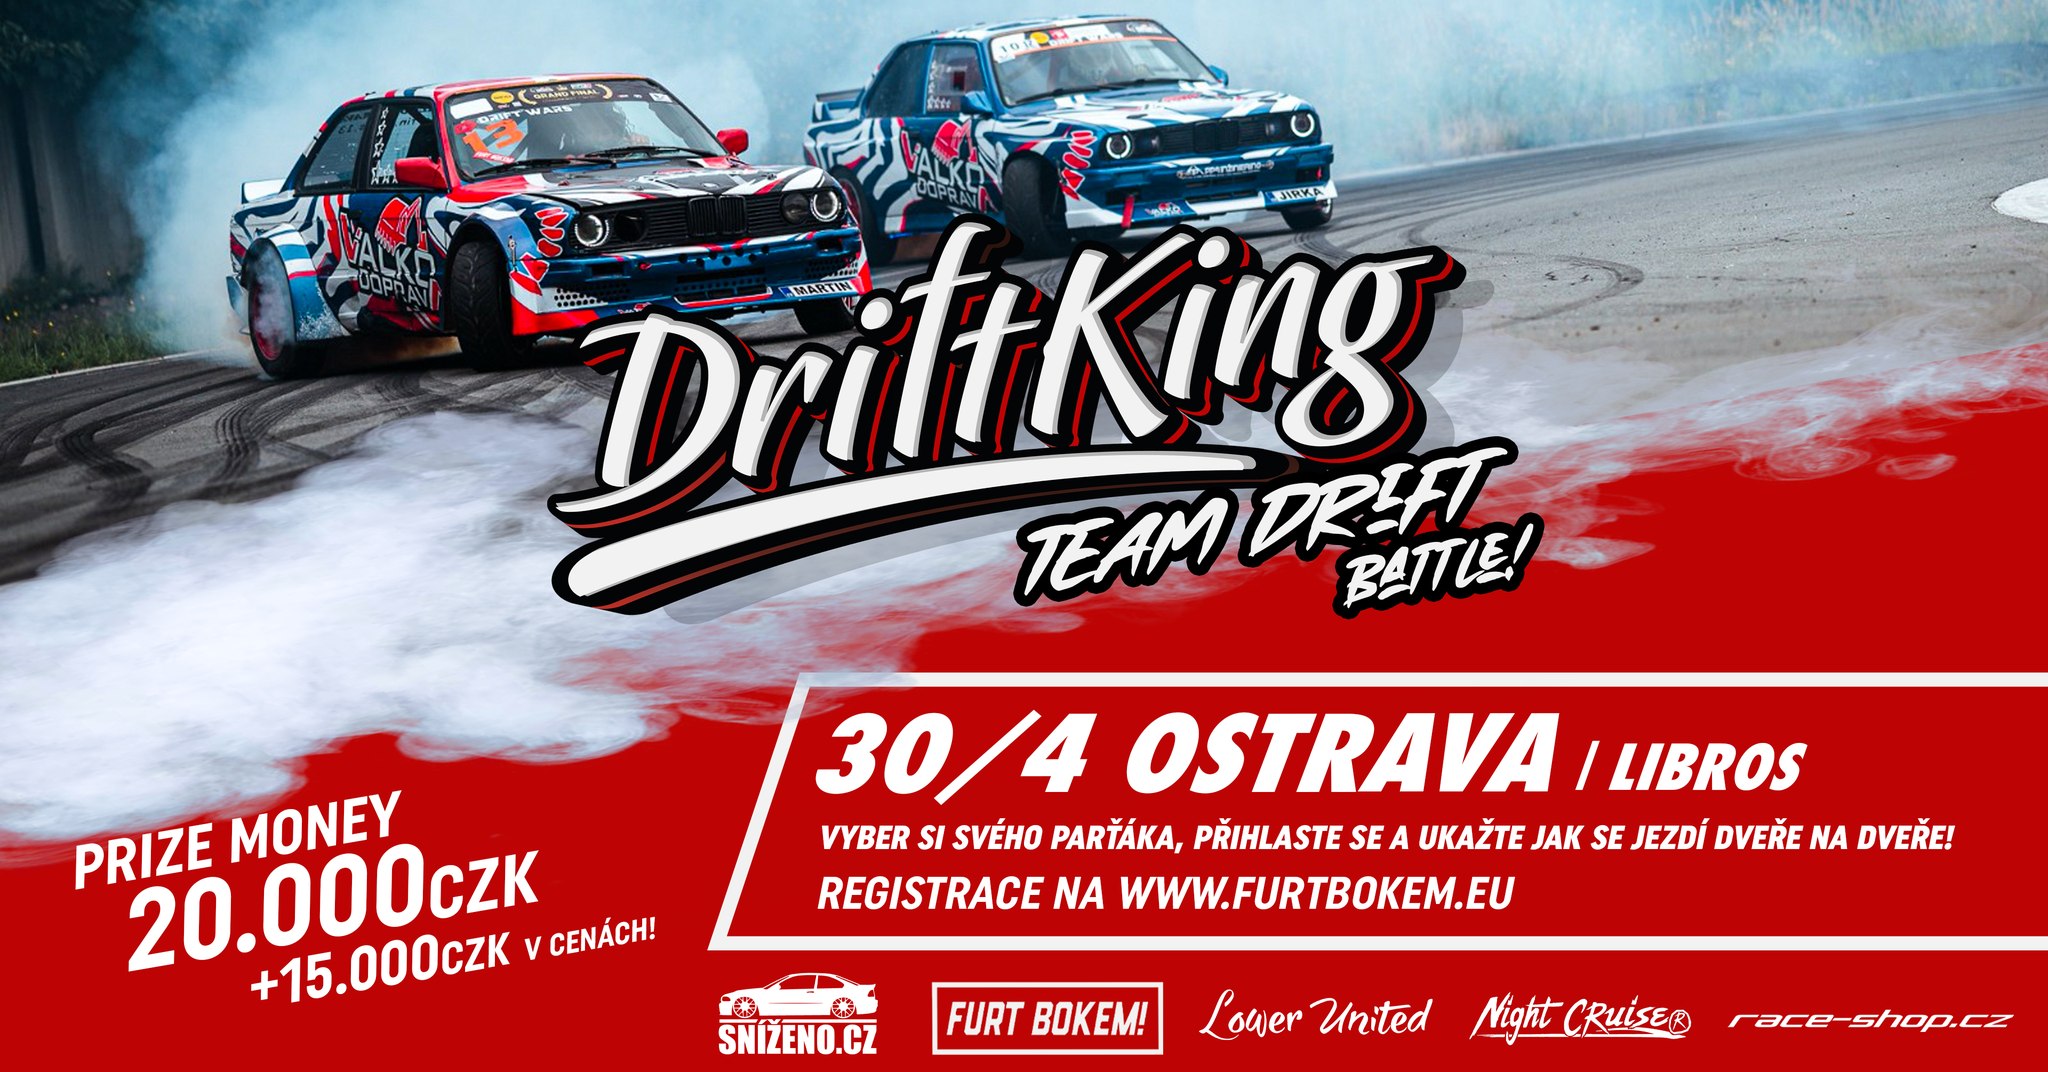 DRIFTKING | Team Drift Battle! | 30/4 OSTRAVA